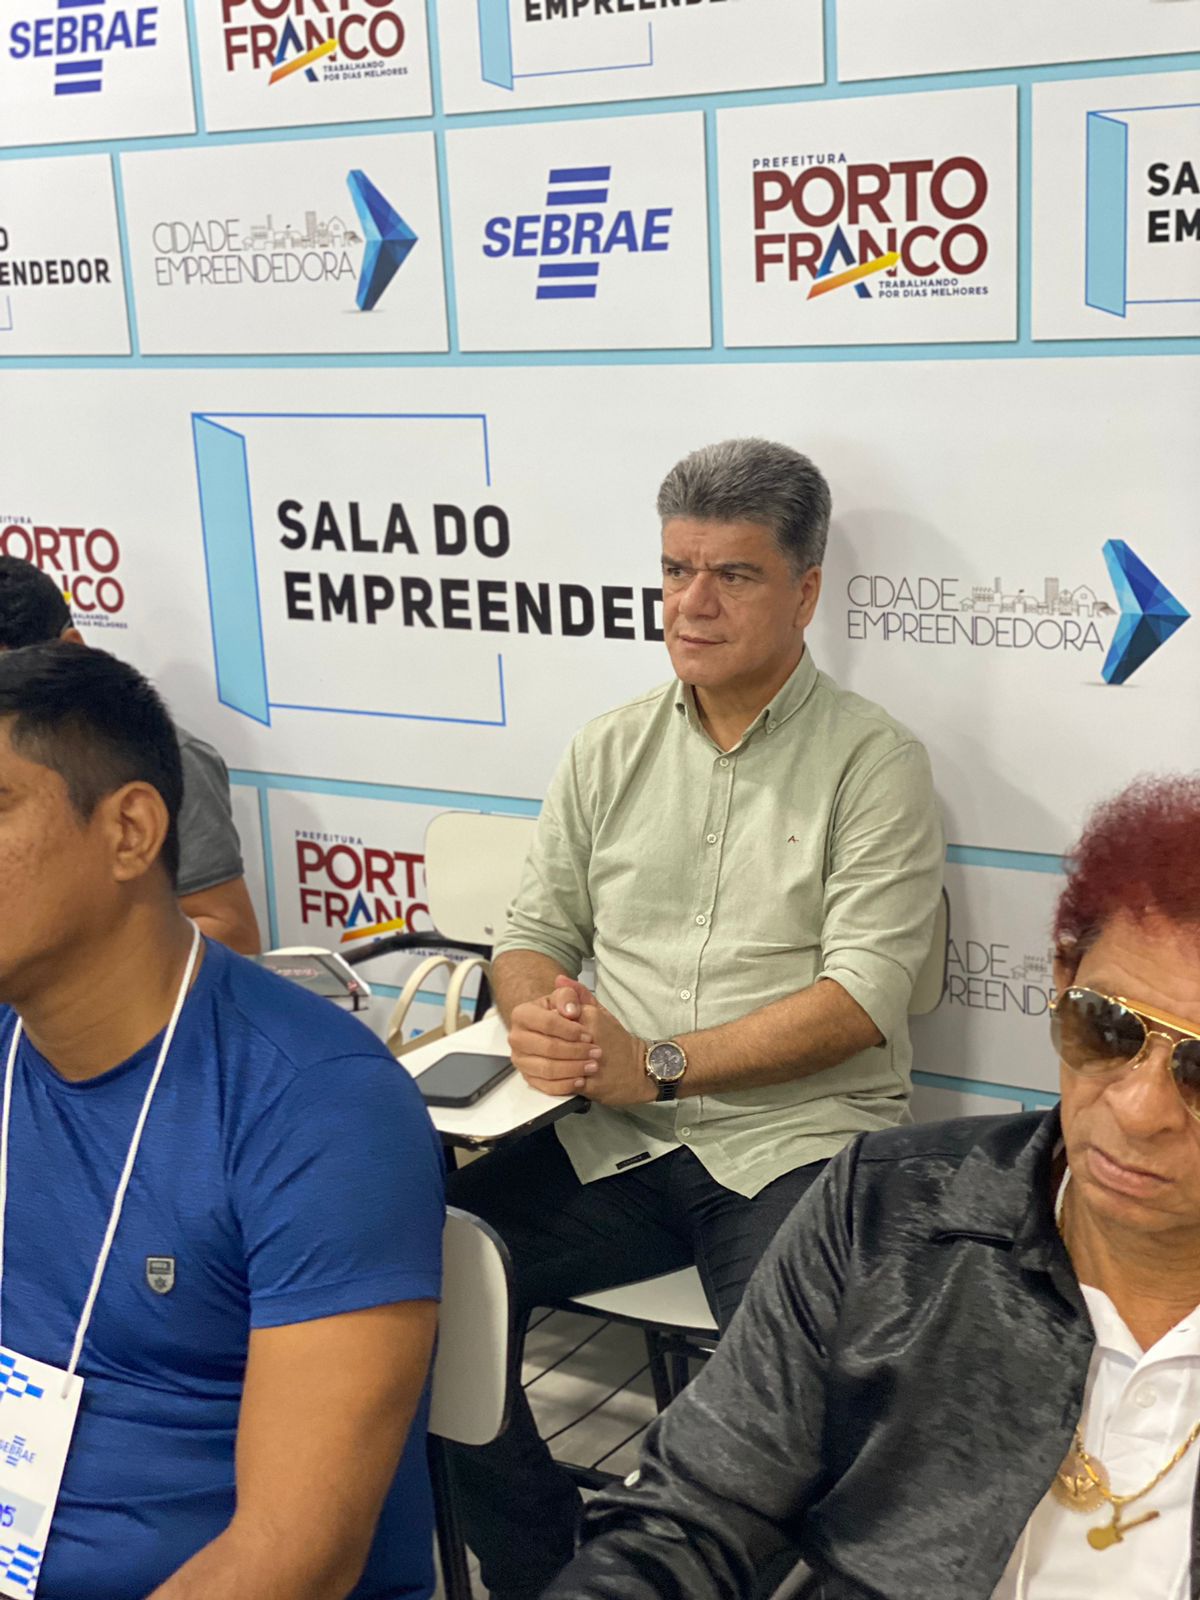 Curso de Marketing Digital para sua Empresa é realizado com sucesso em Porto Franco